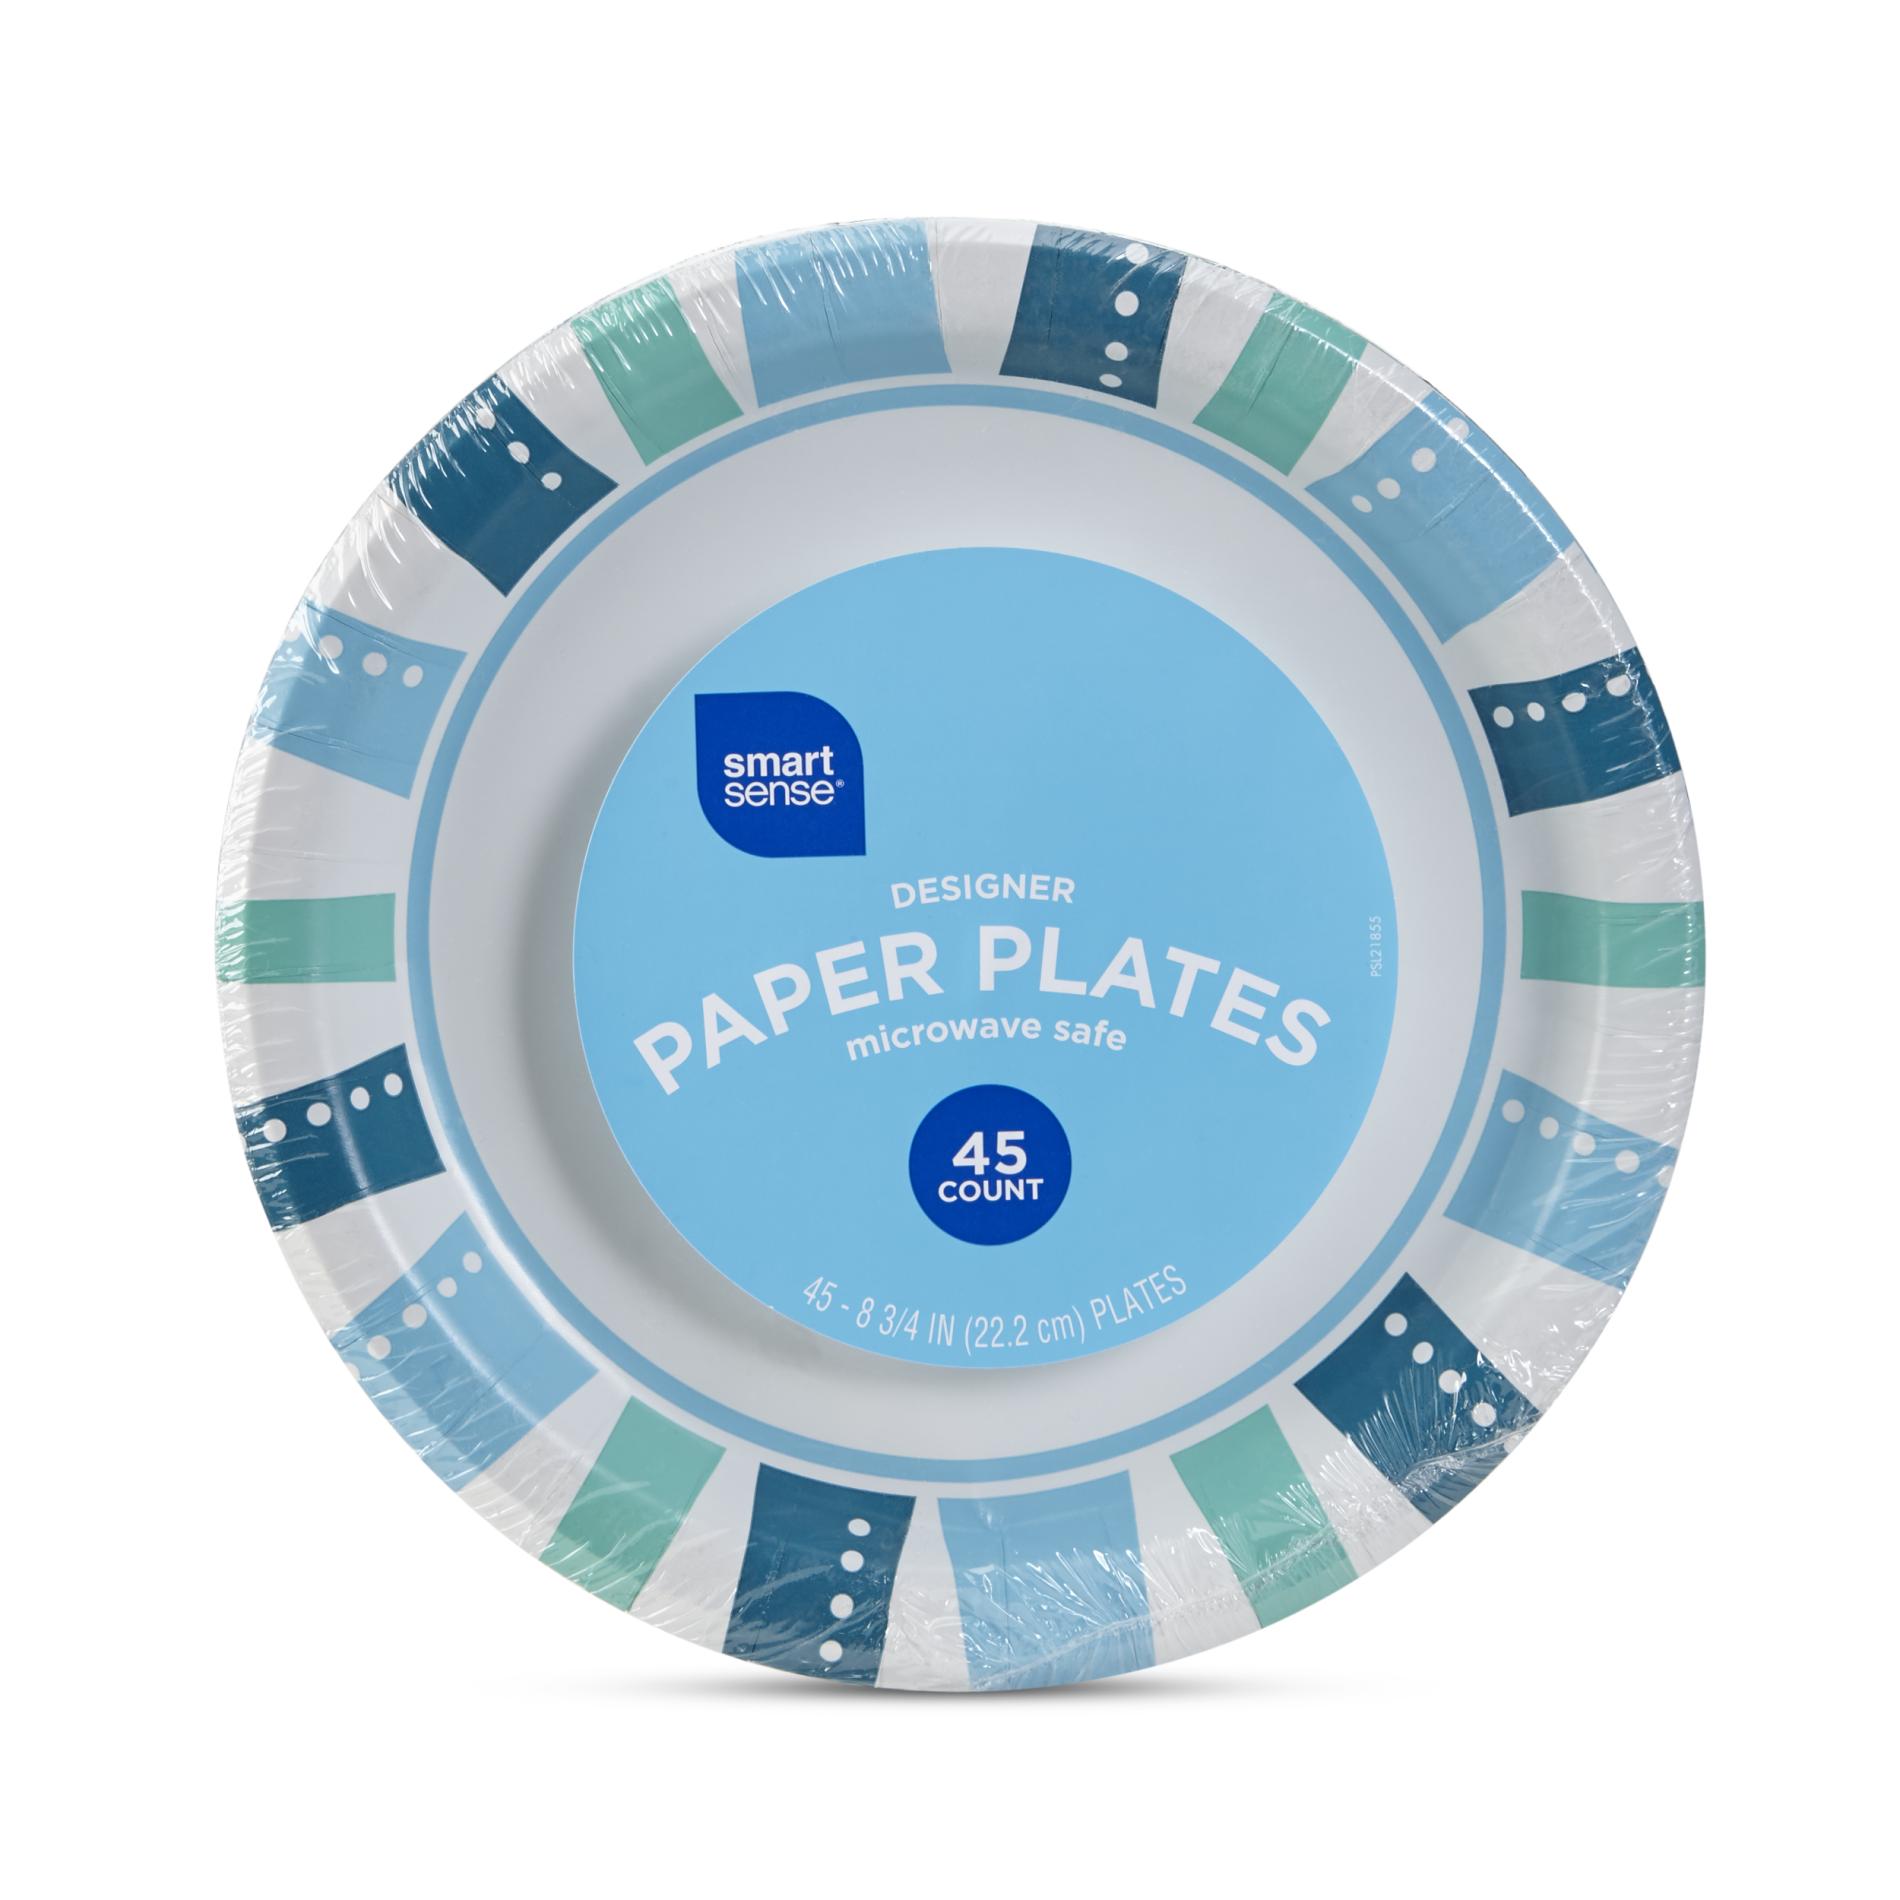 Smart Sense Paper Plates - 45 Count